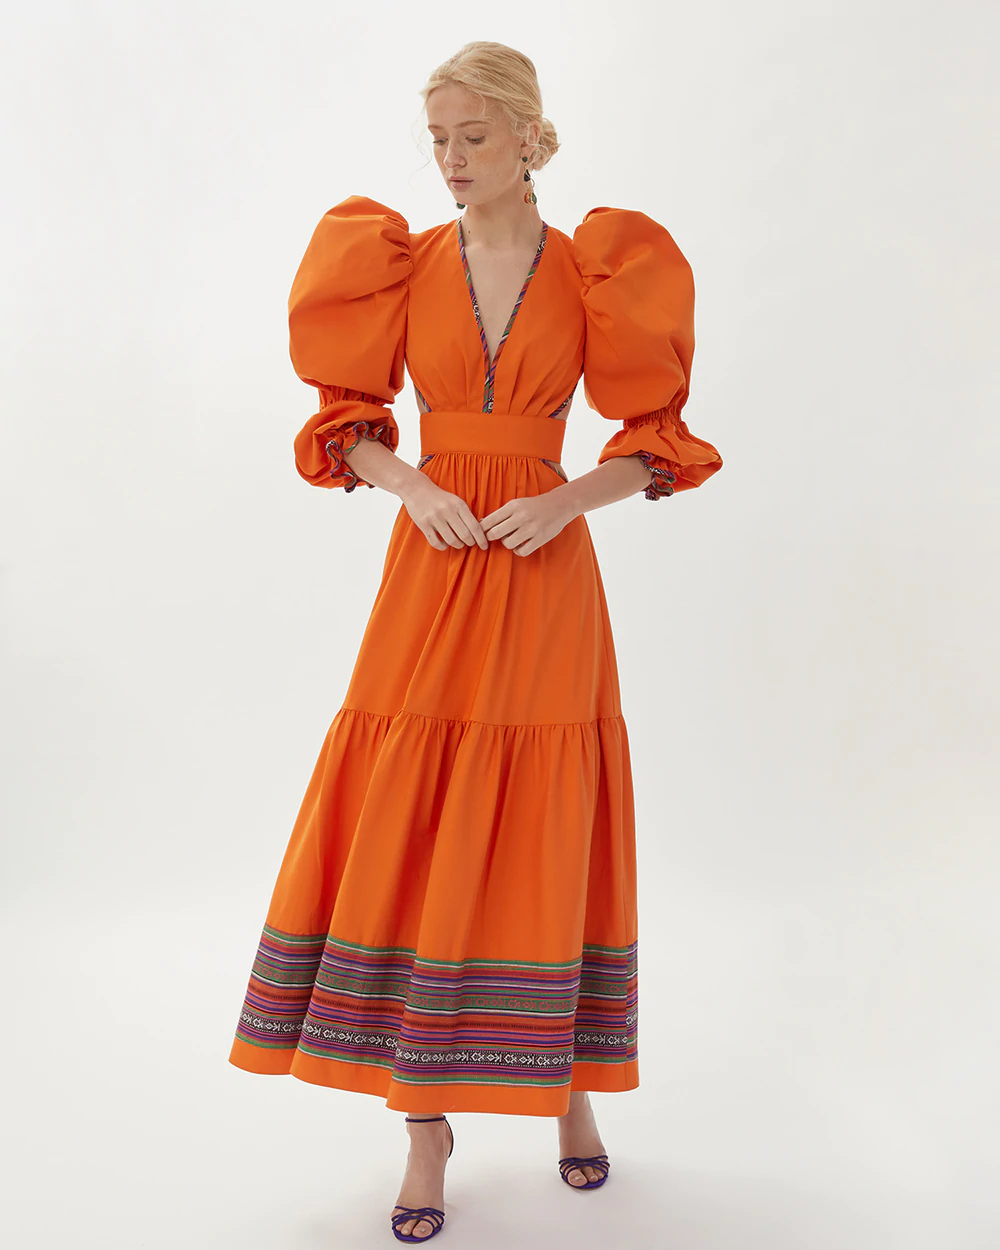 Vestido midi naranja con detalle mexicano knippe.